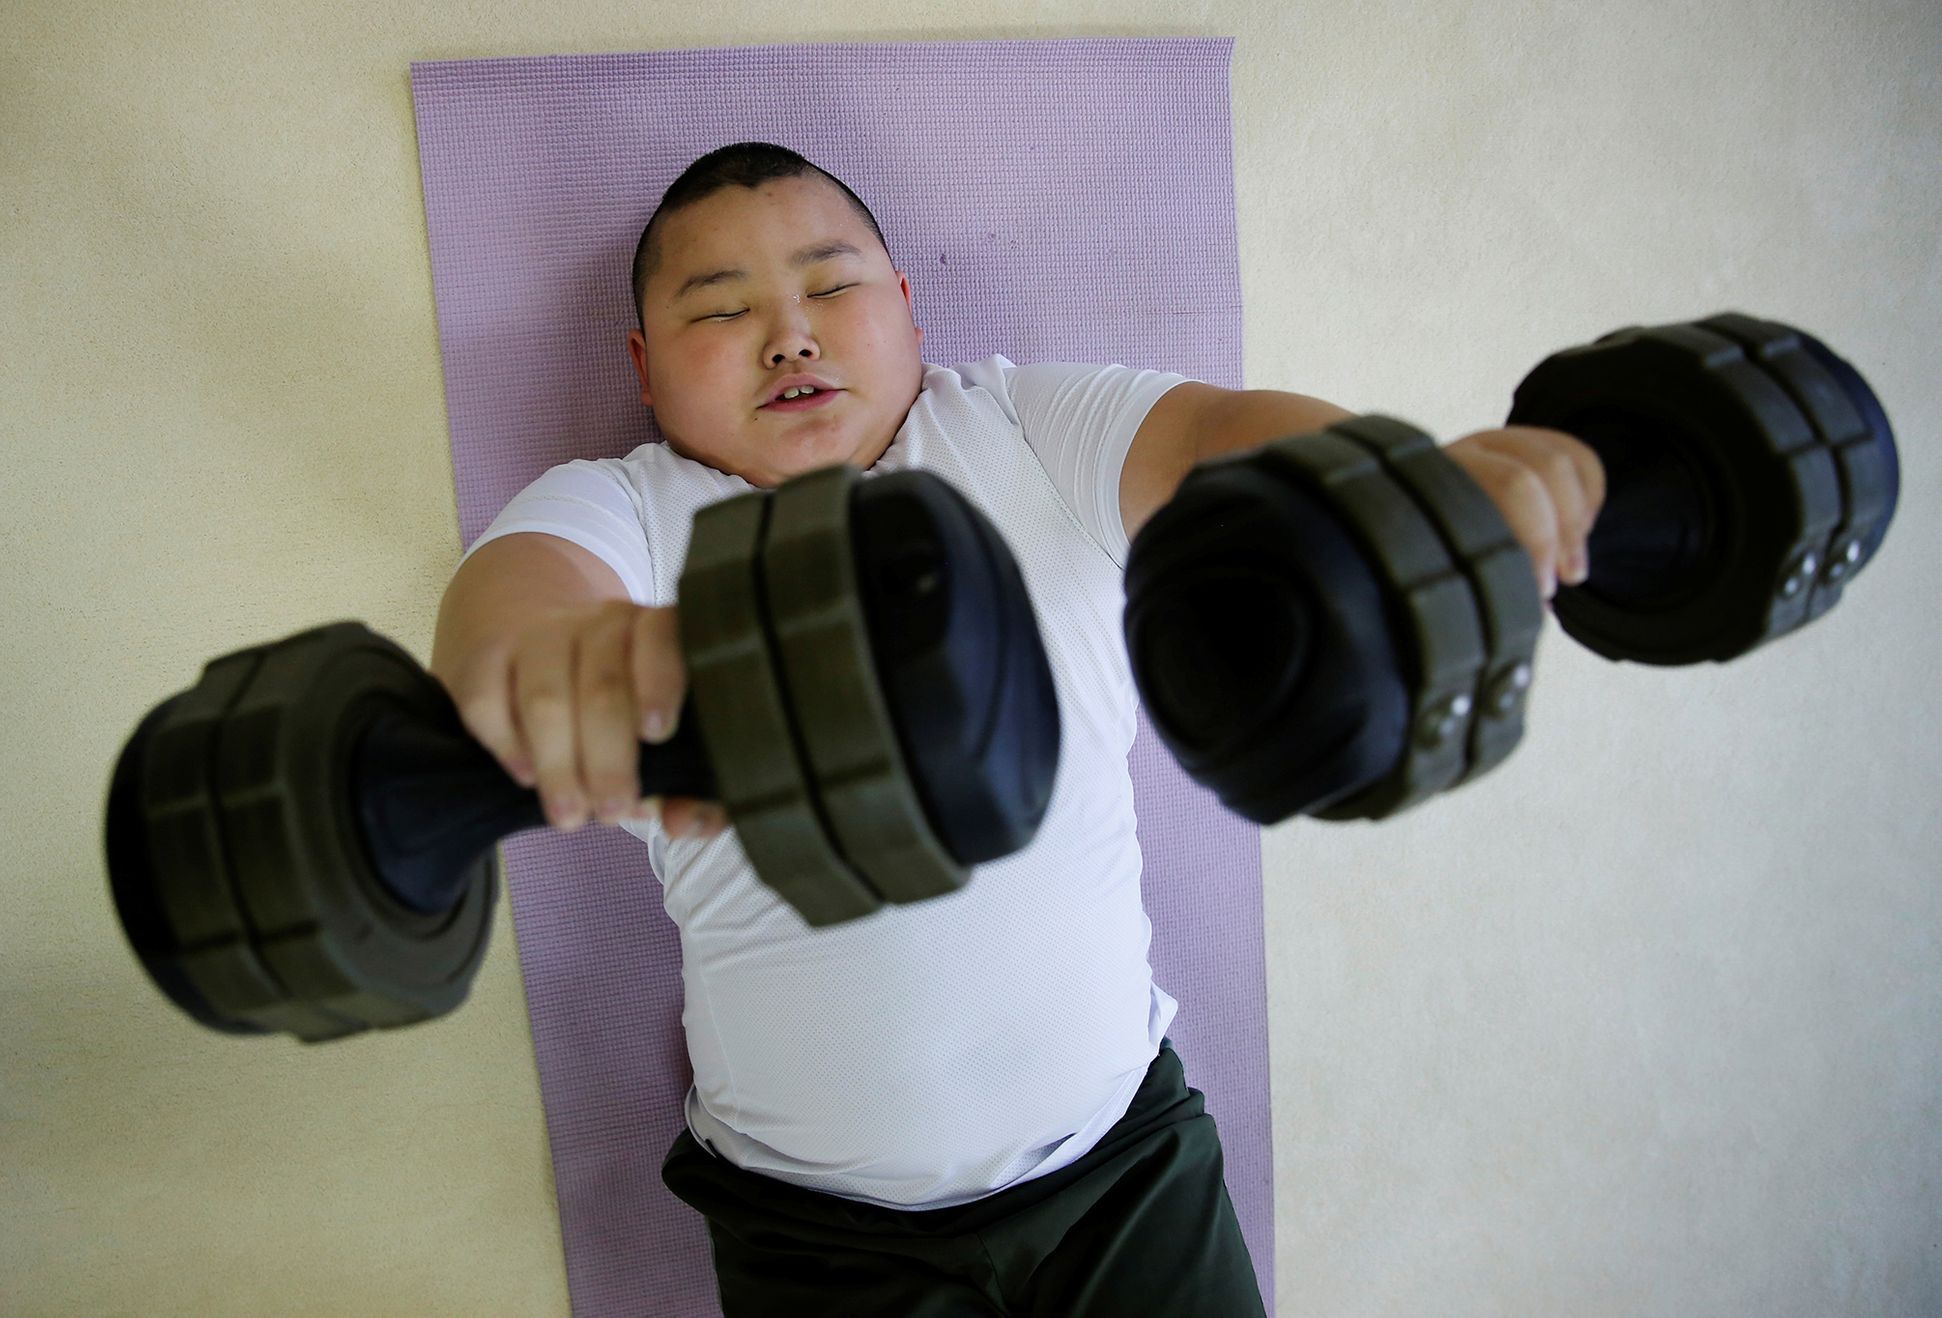 Reuters: mladí zápasníci sumo v Japonsku